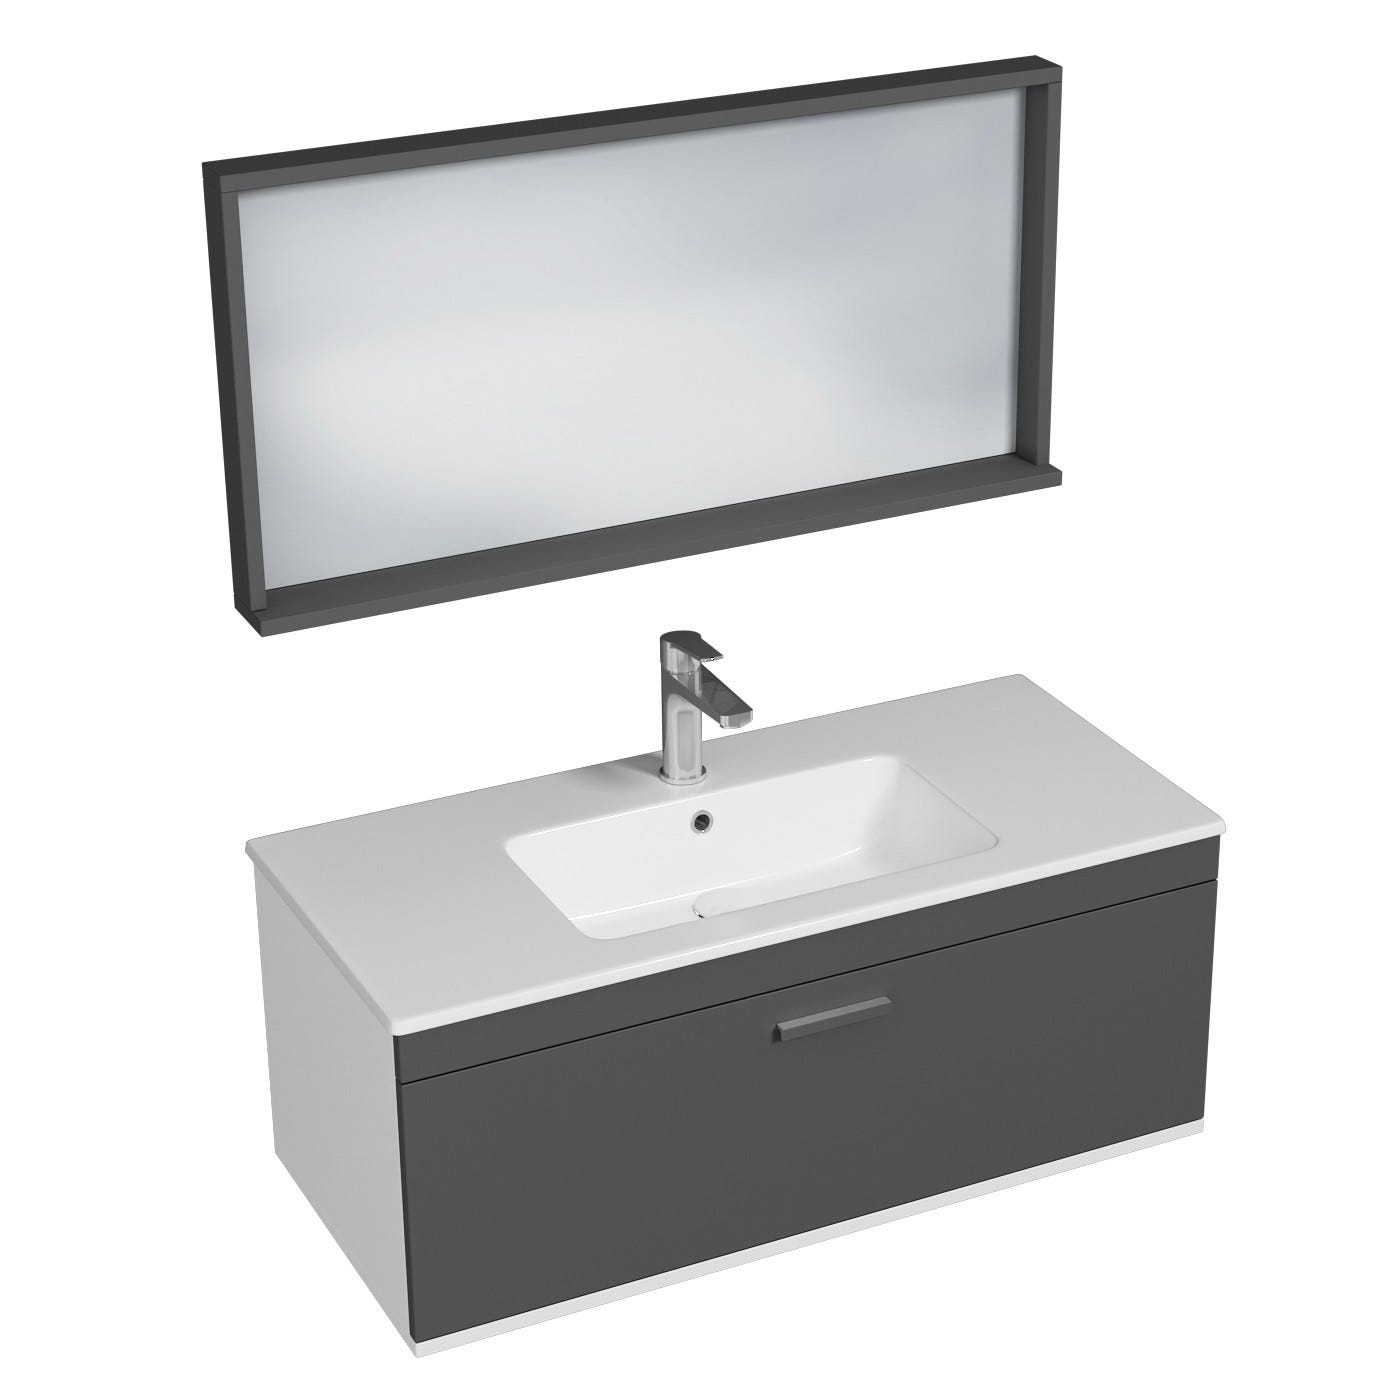 RUBITE Meuble salle de bain simple vasque 1 tiroir gris anthracite largeur 100 cm + miroir cadre 0